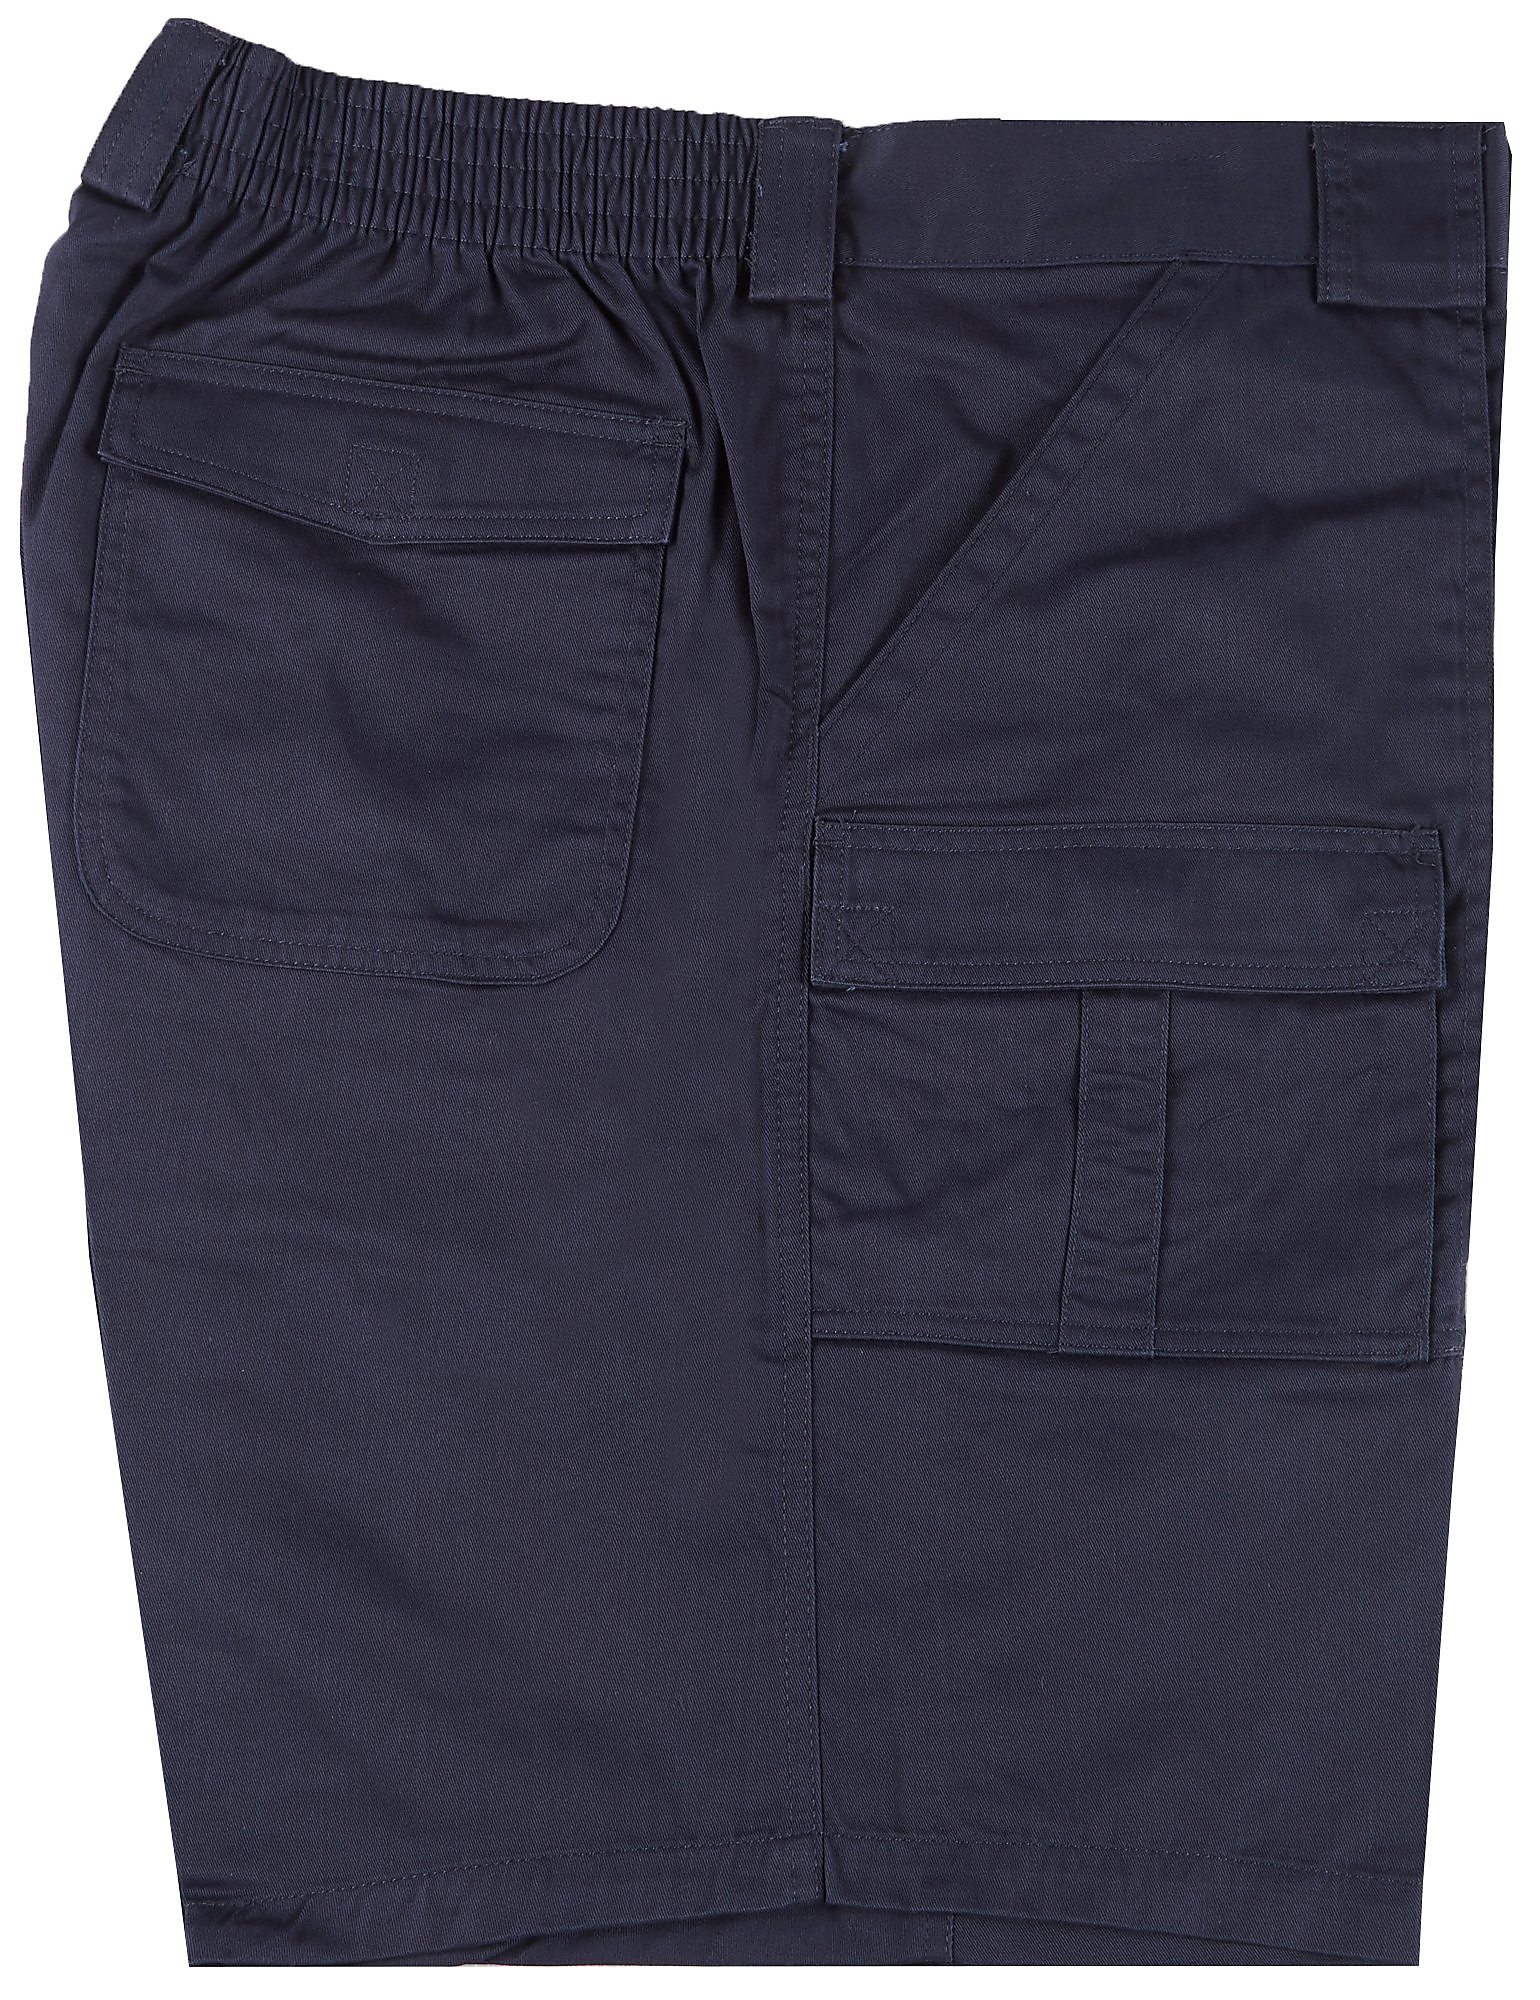 Weekender Mens Big & Tall Six Pocket Trader Shorts | eBay